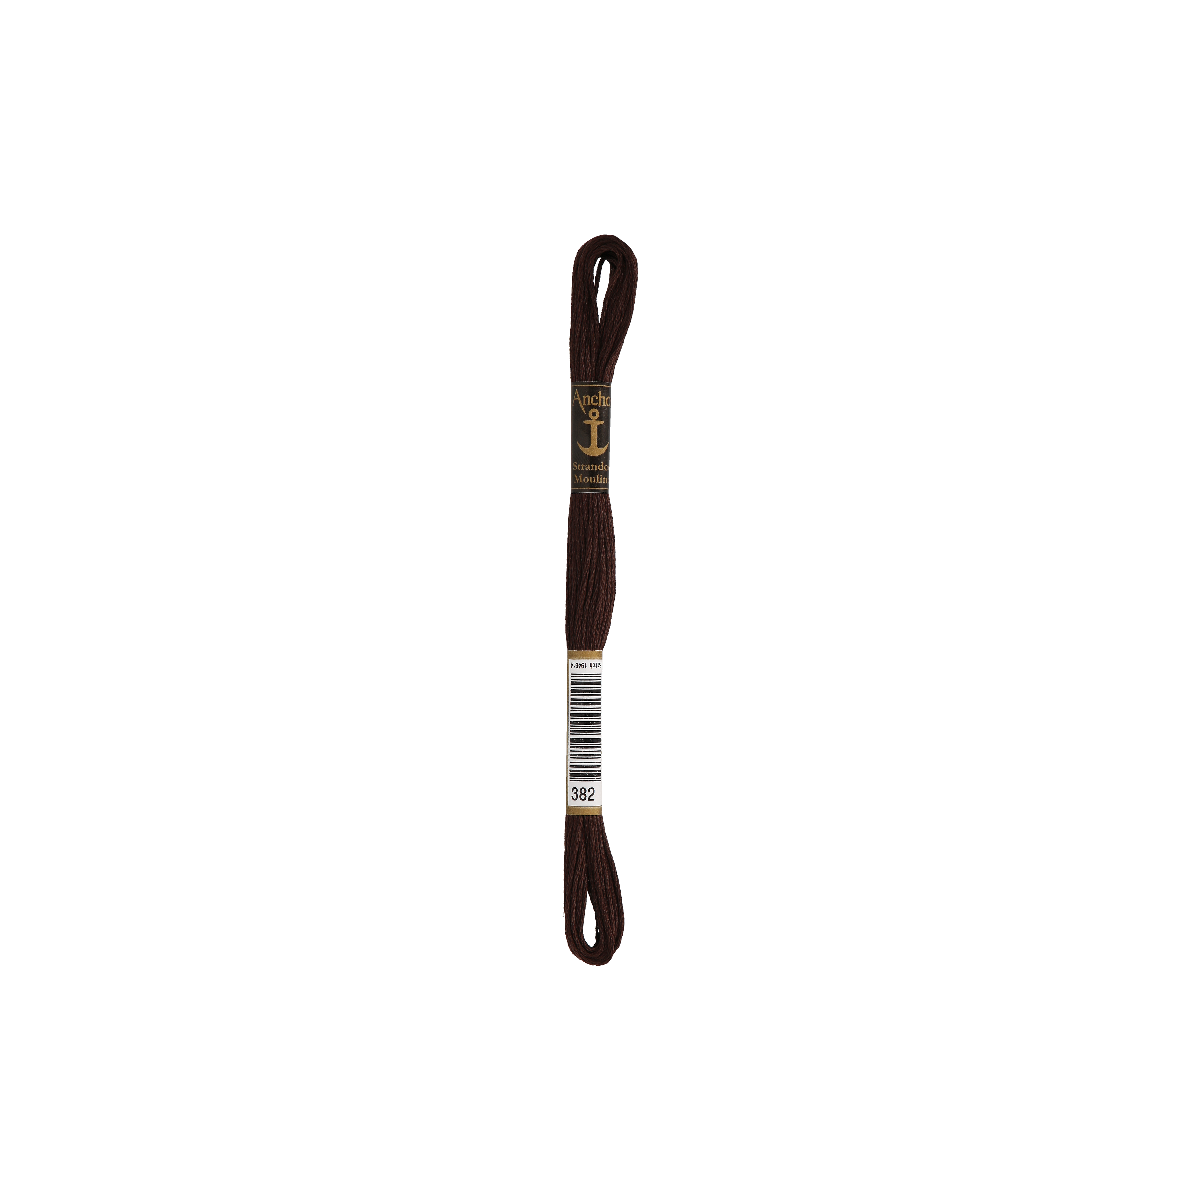 Anchor Sticktwist 8m, ebano, cotone, colore 382, 6 fili